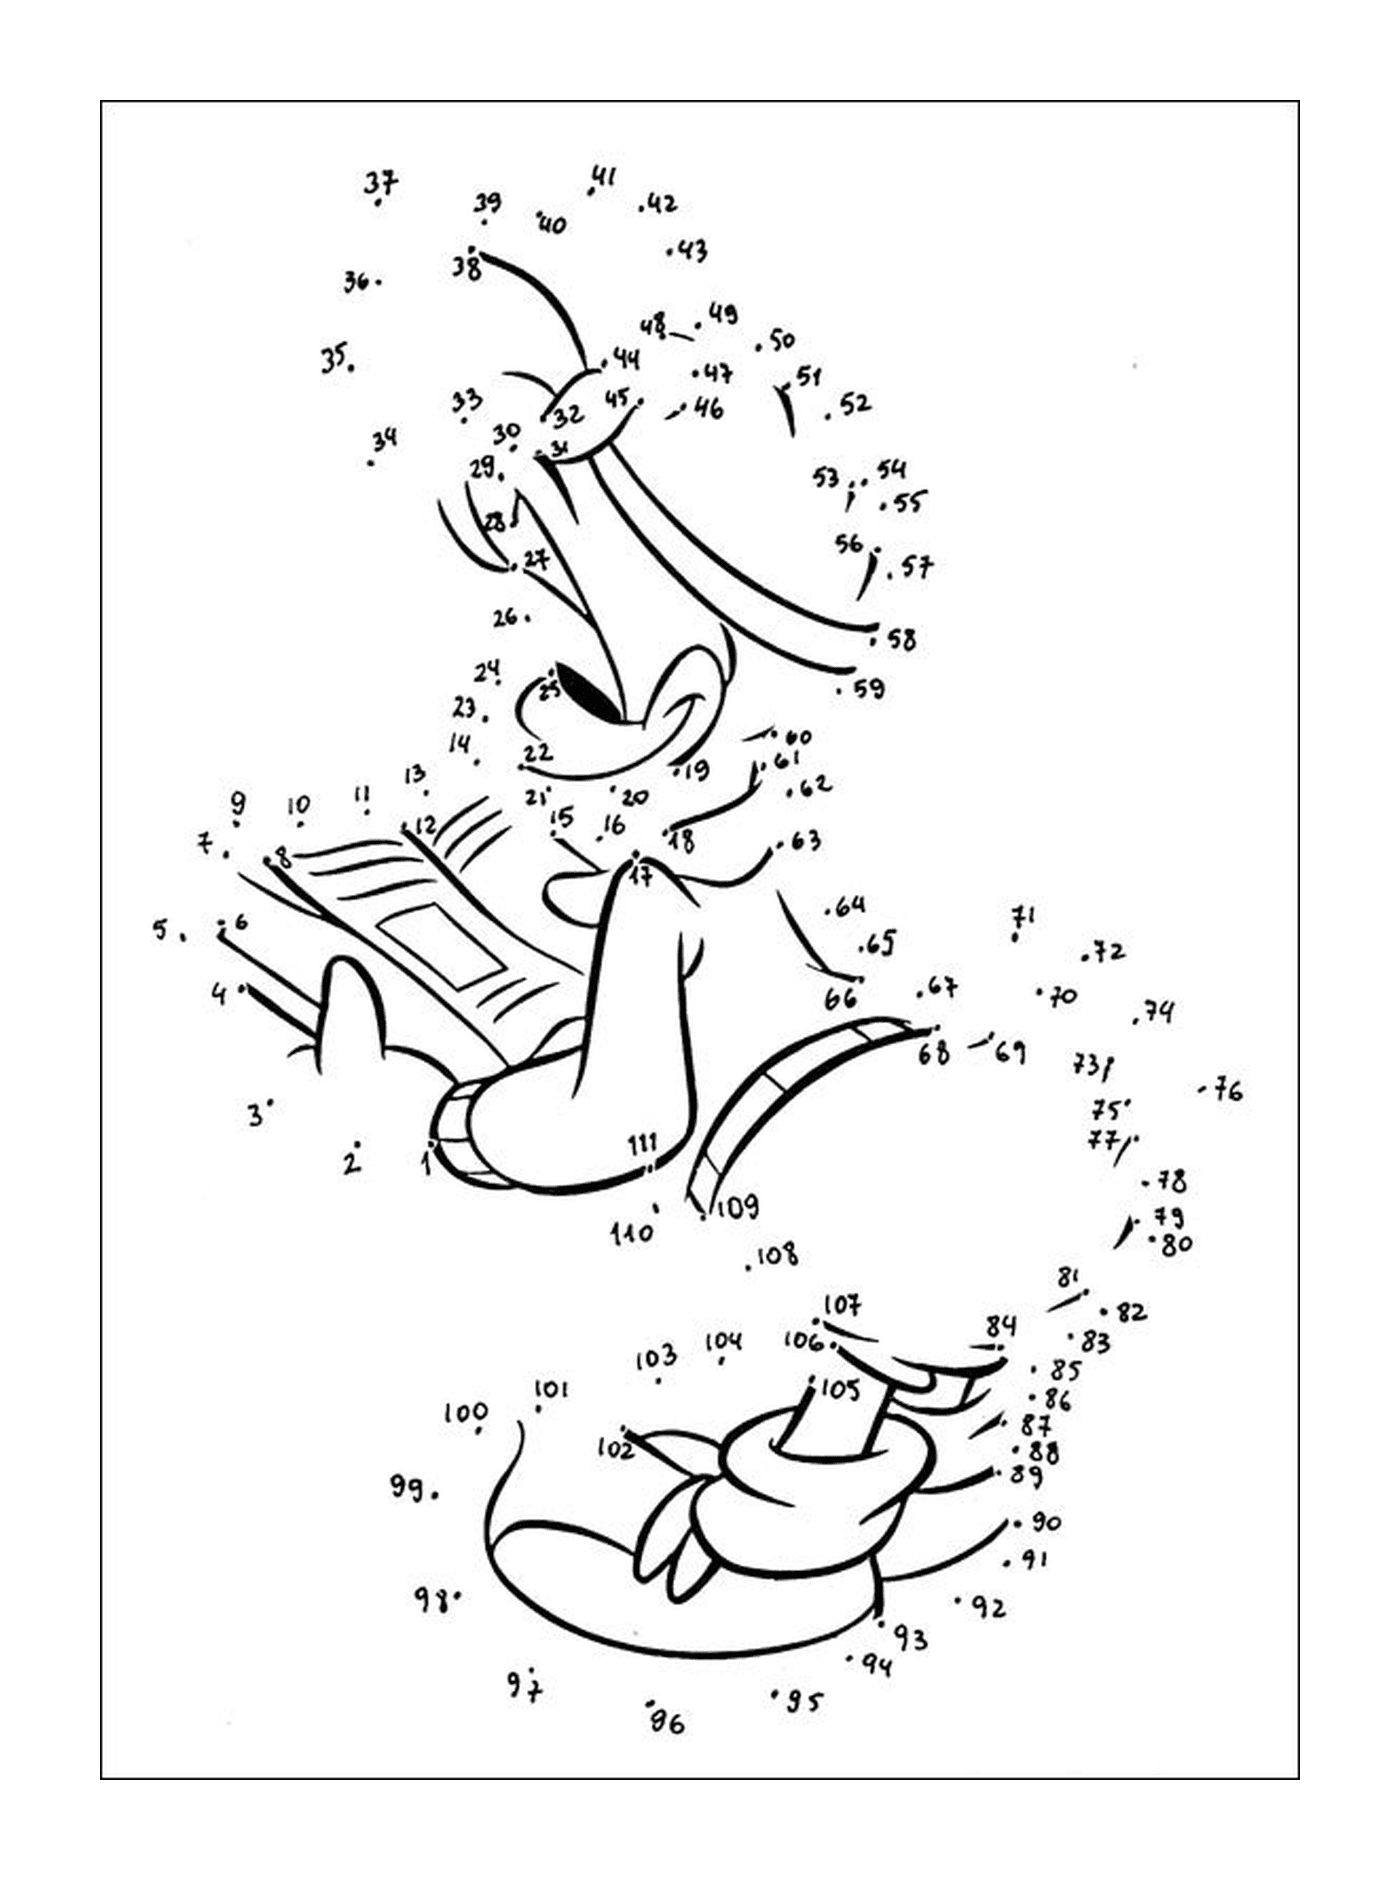  Bugs Bunny e Daffy Duck em pontos para se conectar 